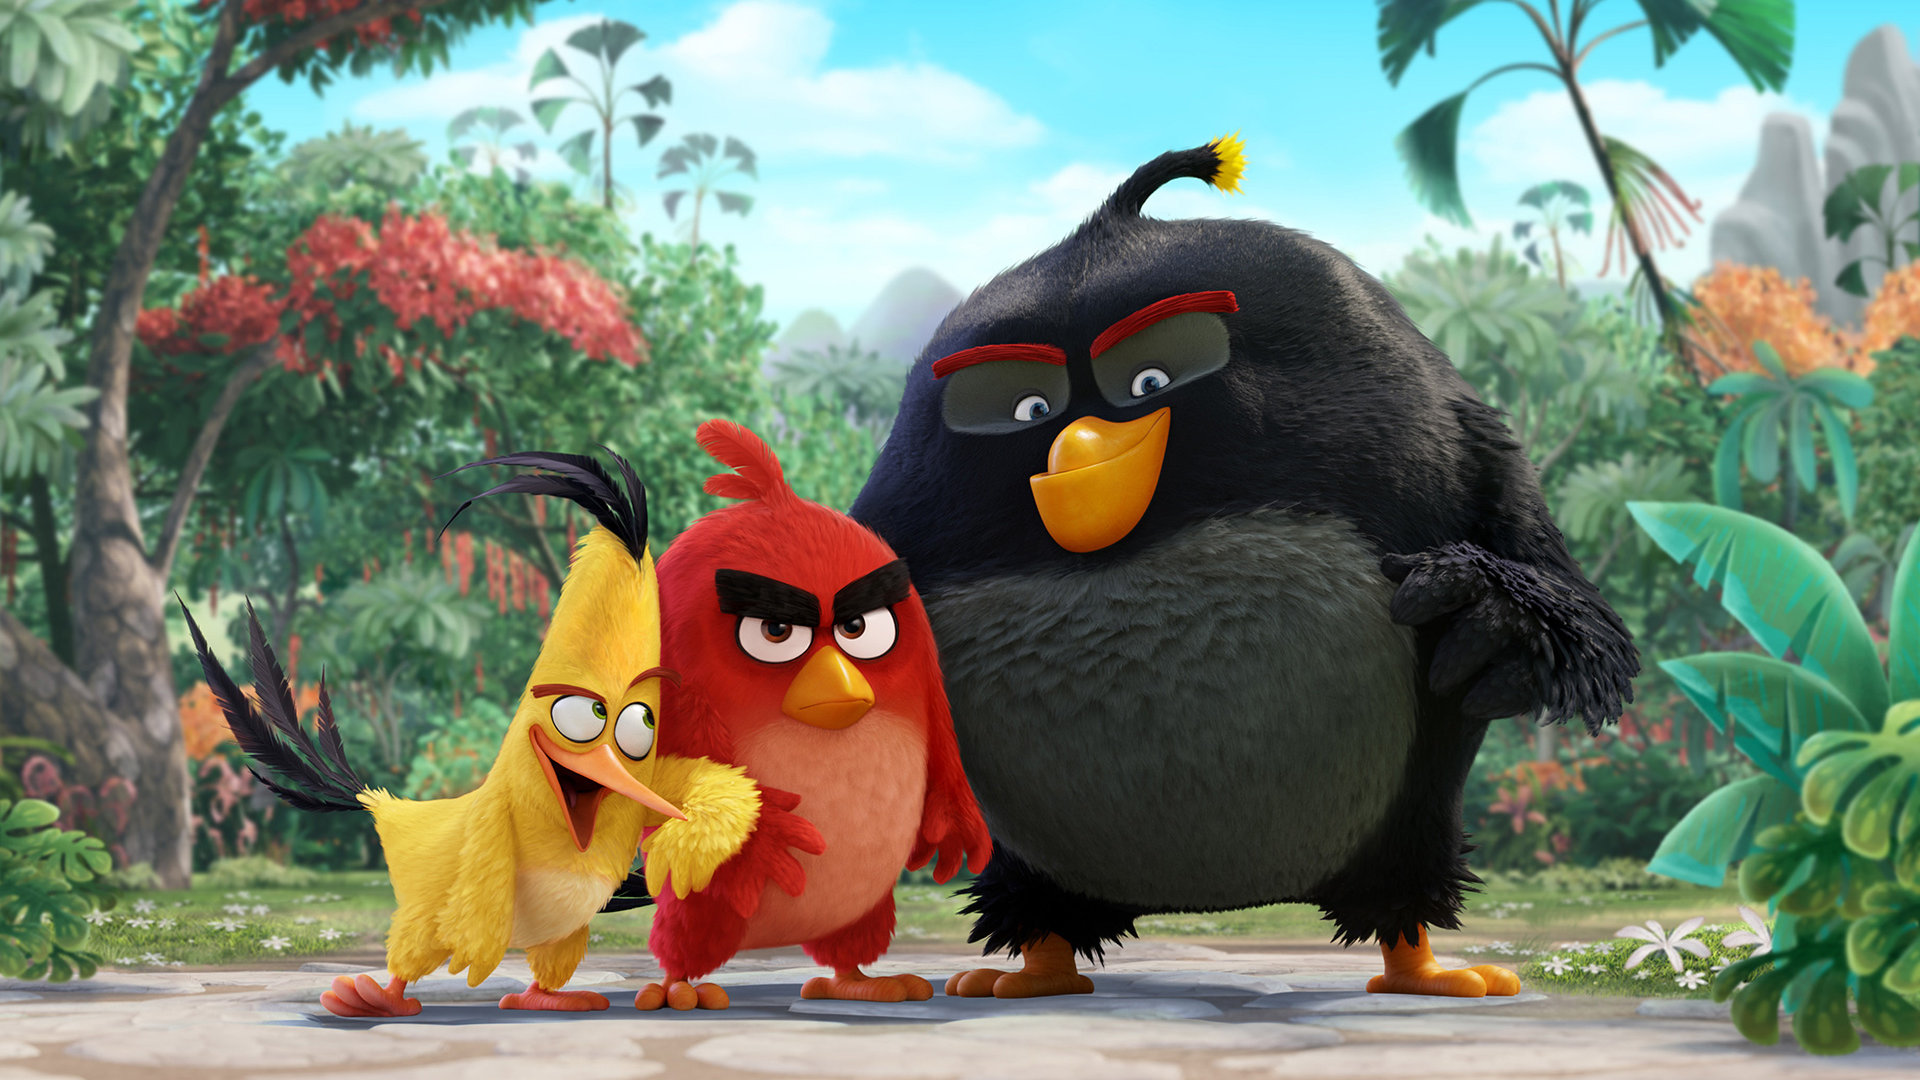 Angry-Birds-Movie-2016